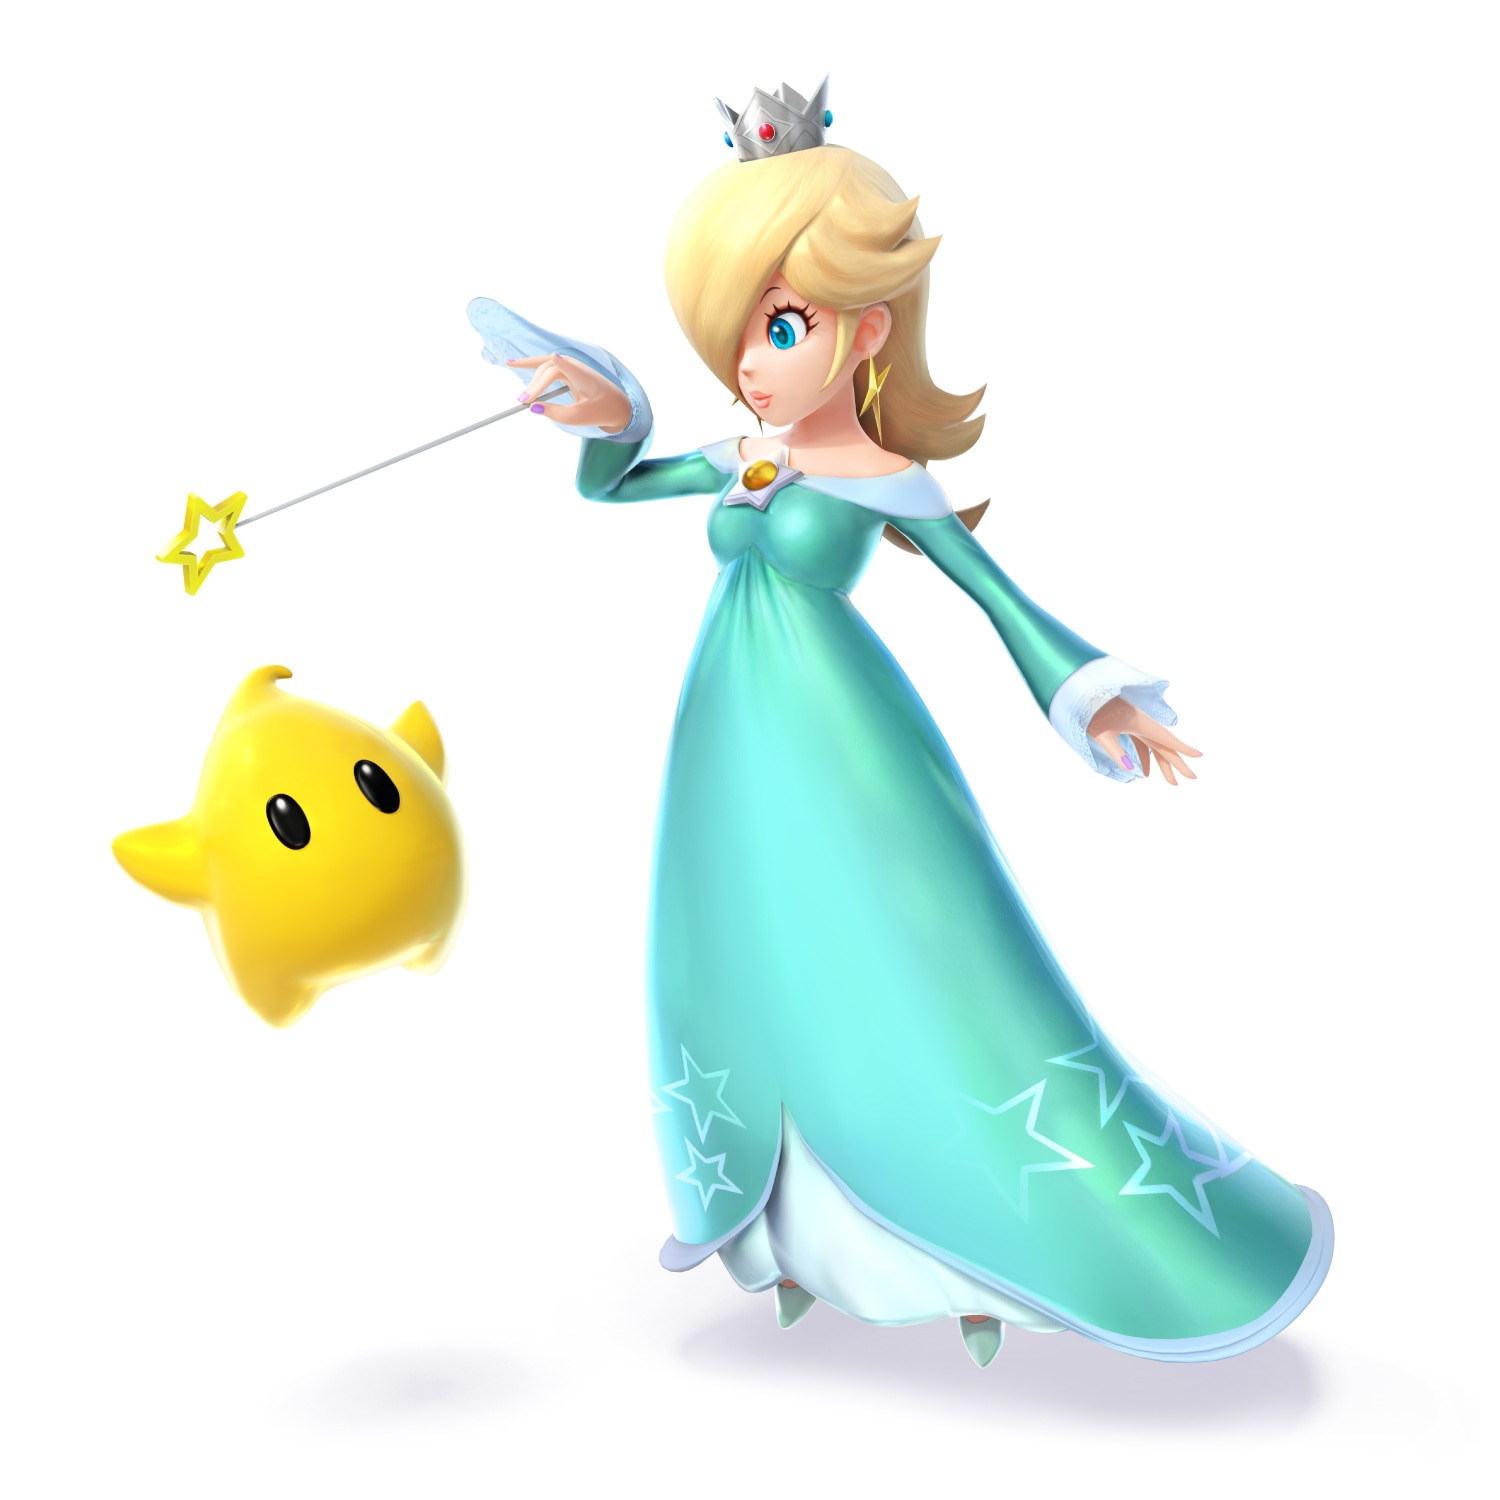 Super Smash Bros. for Nintendo 3DS and Wii U: Rosalina & Luma.